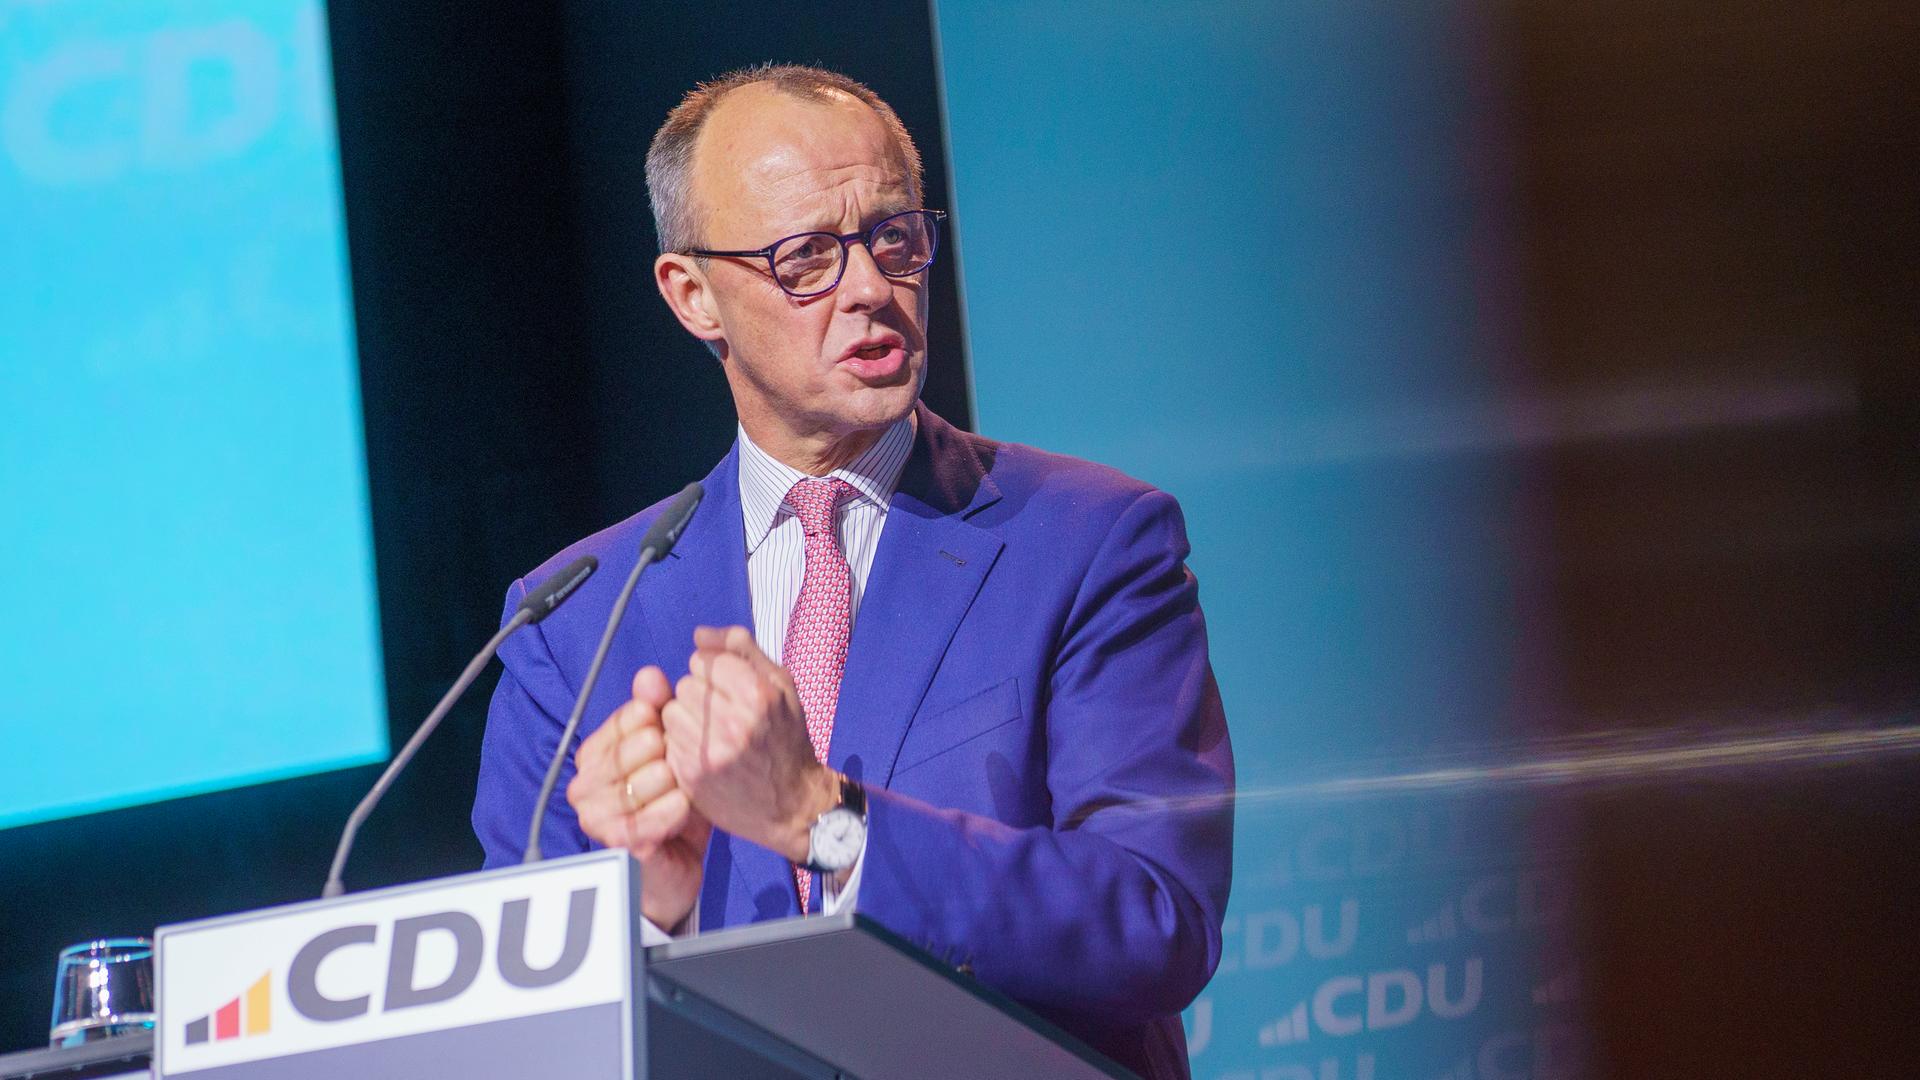 Friedrich Merz spricht an einem Rednerpult mit "CDU"-Schriftzug.